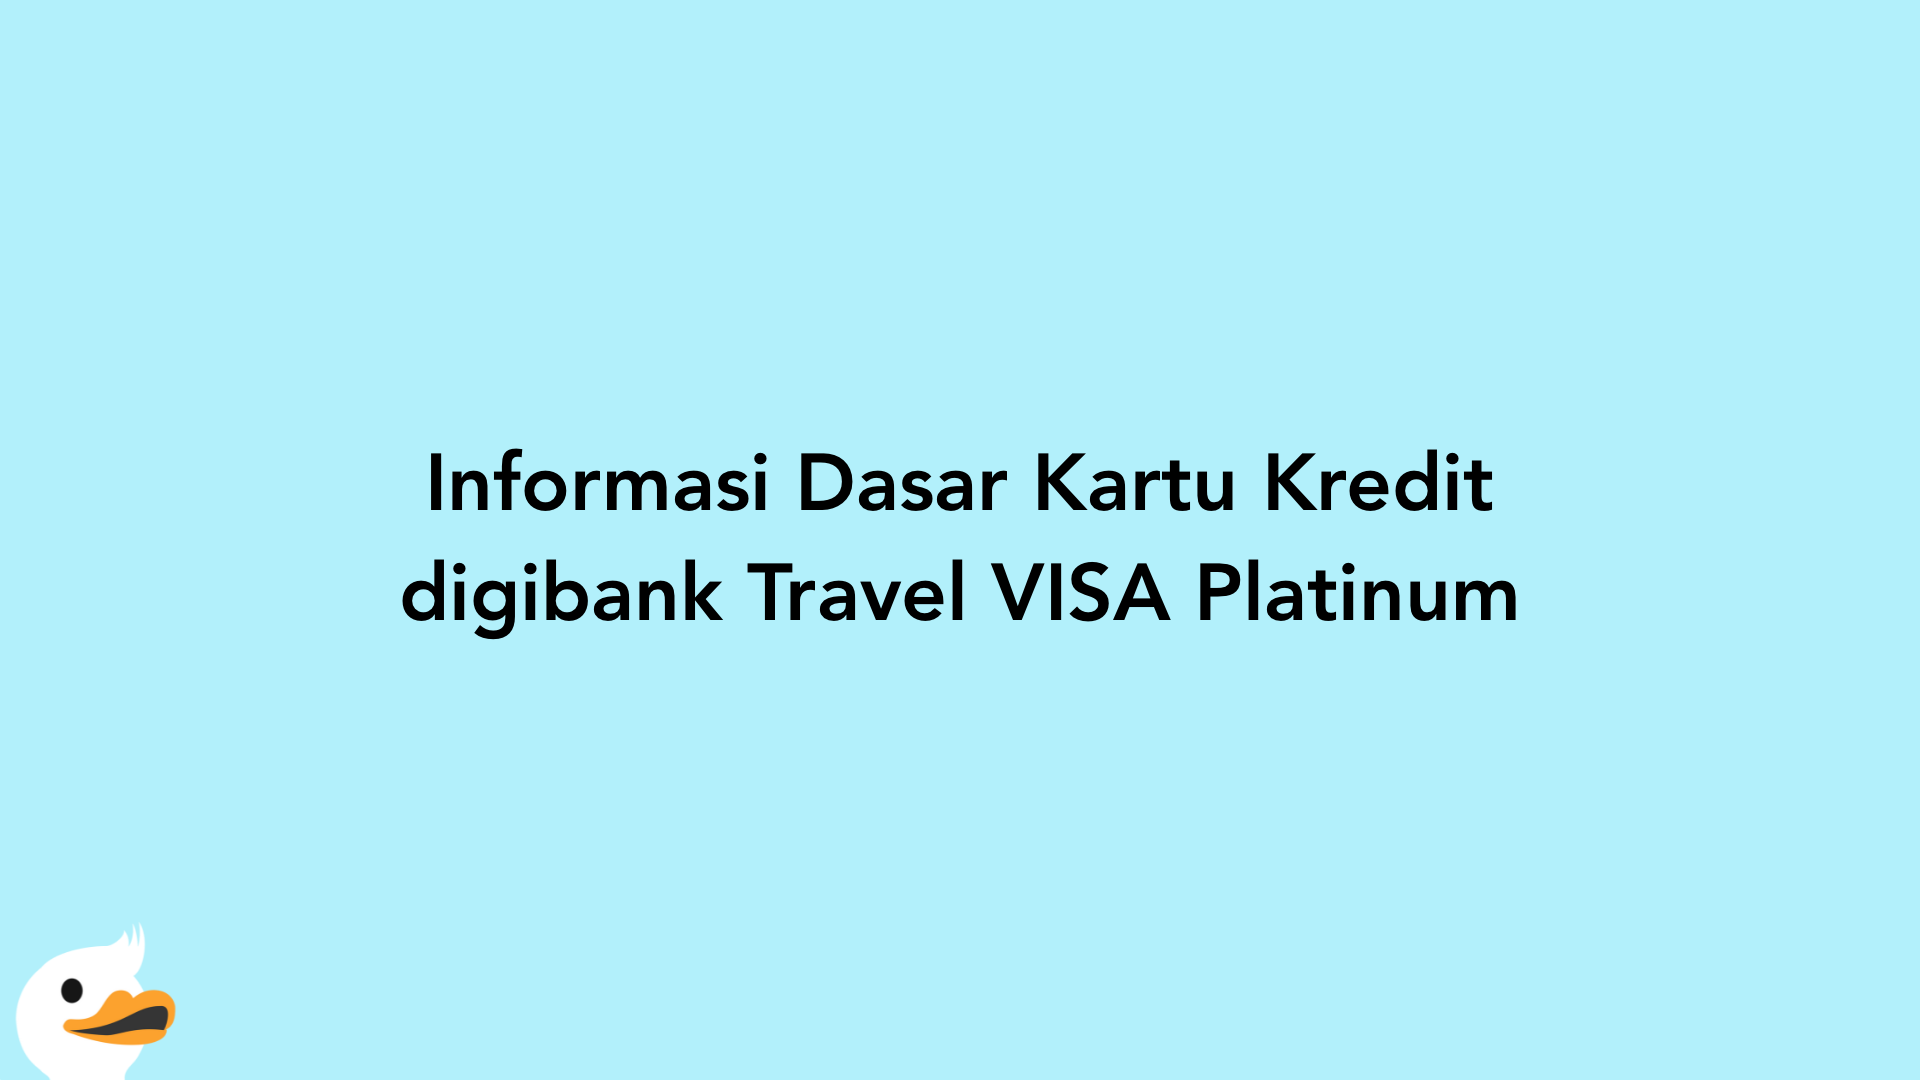 Informasi Dasar Kartu Kredit digibank Travel VISA Platinum